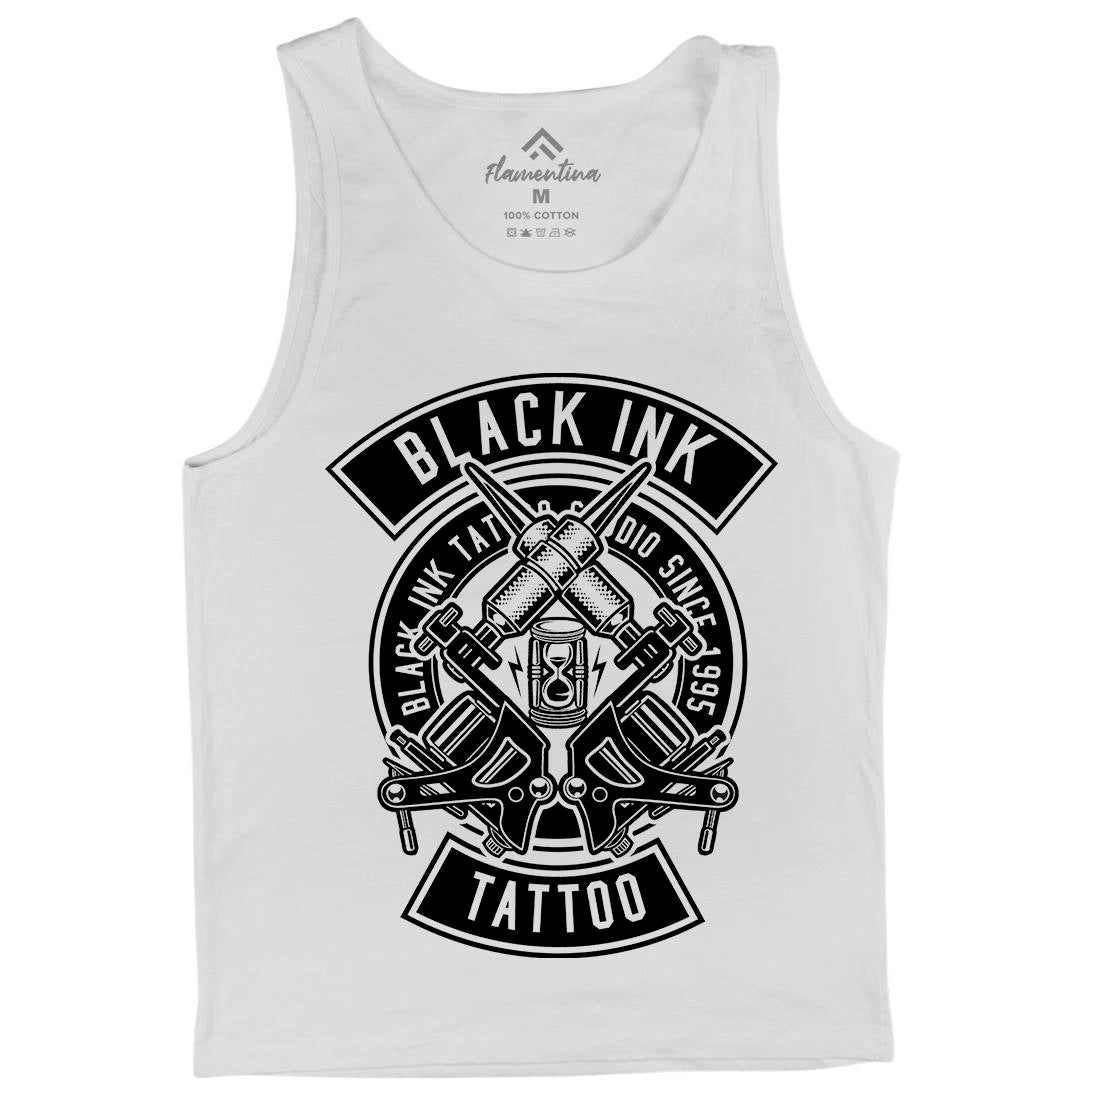 Black Ink Mens Tank Top Vest Tattoo B500